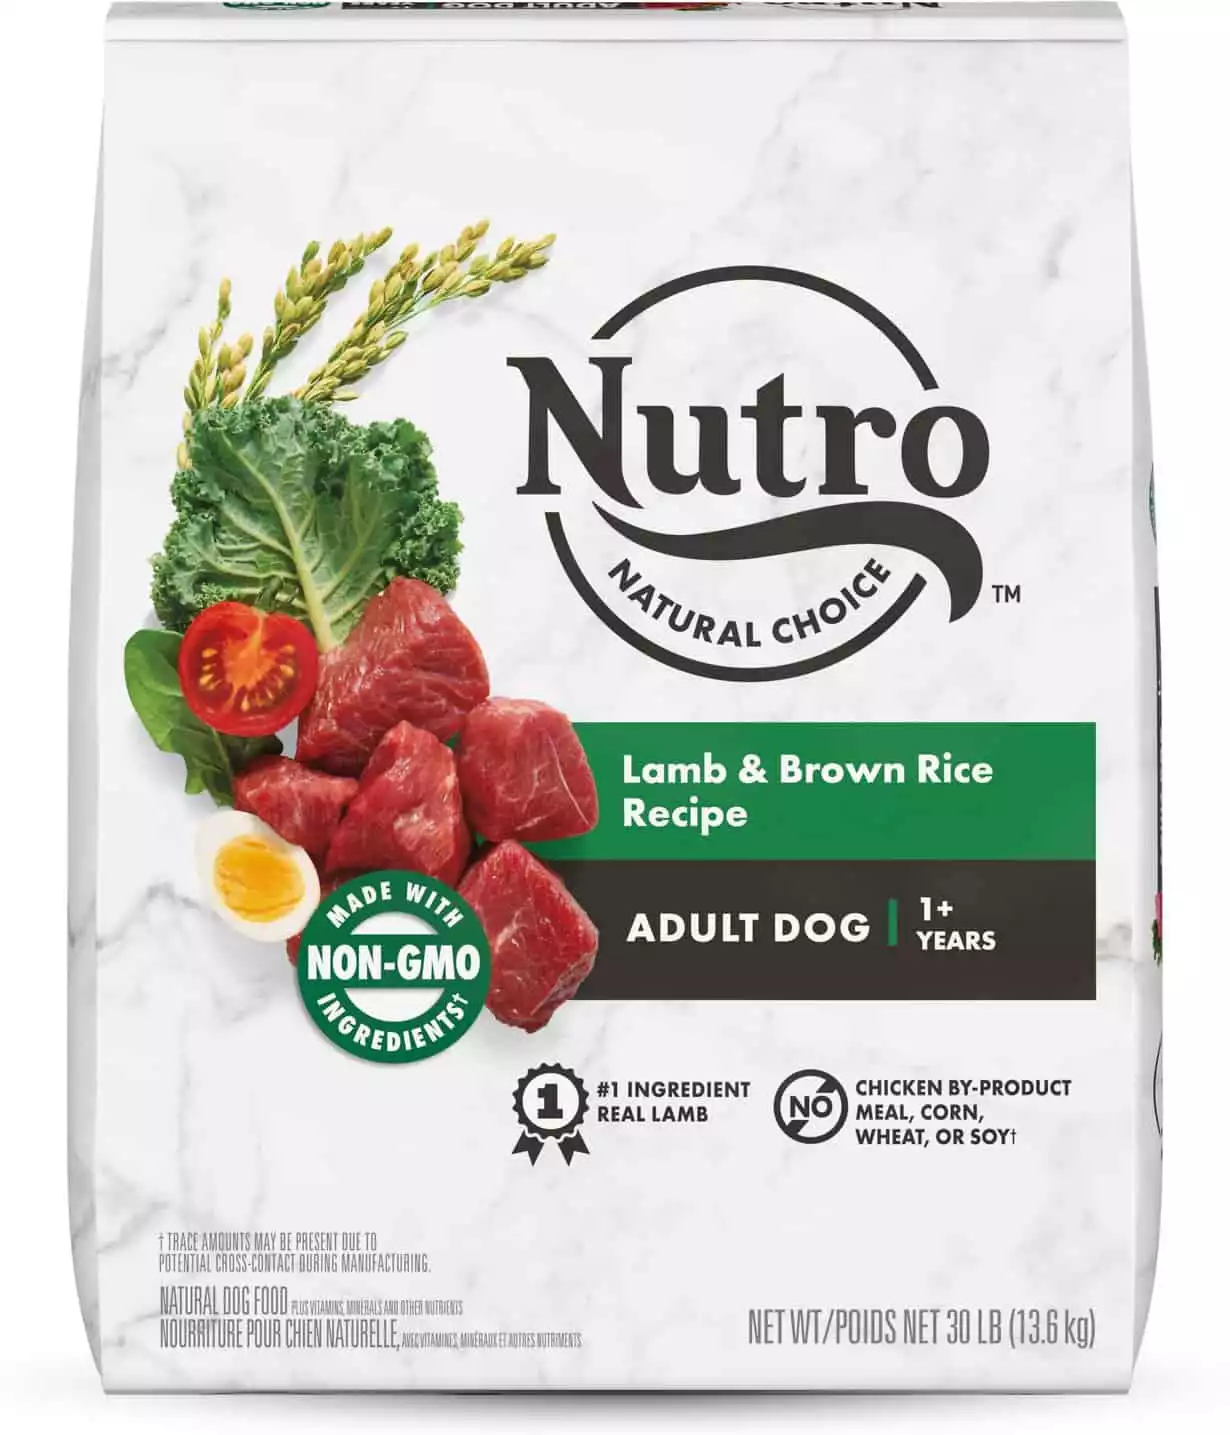 Nutro Natural Choice Lamb